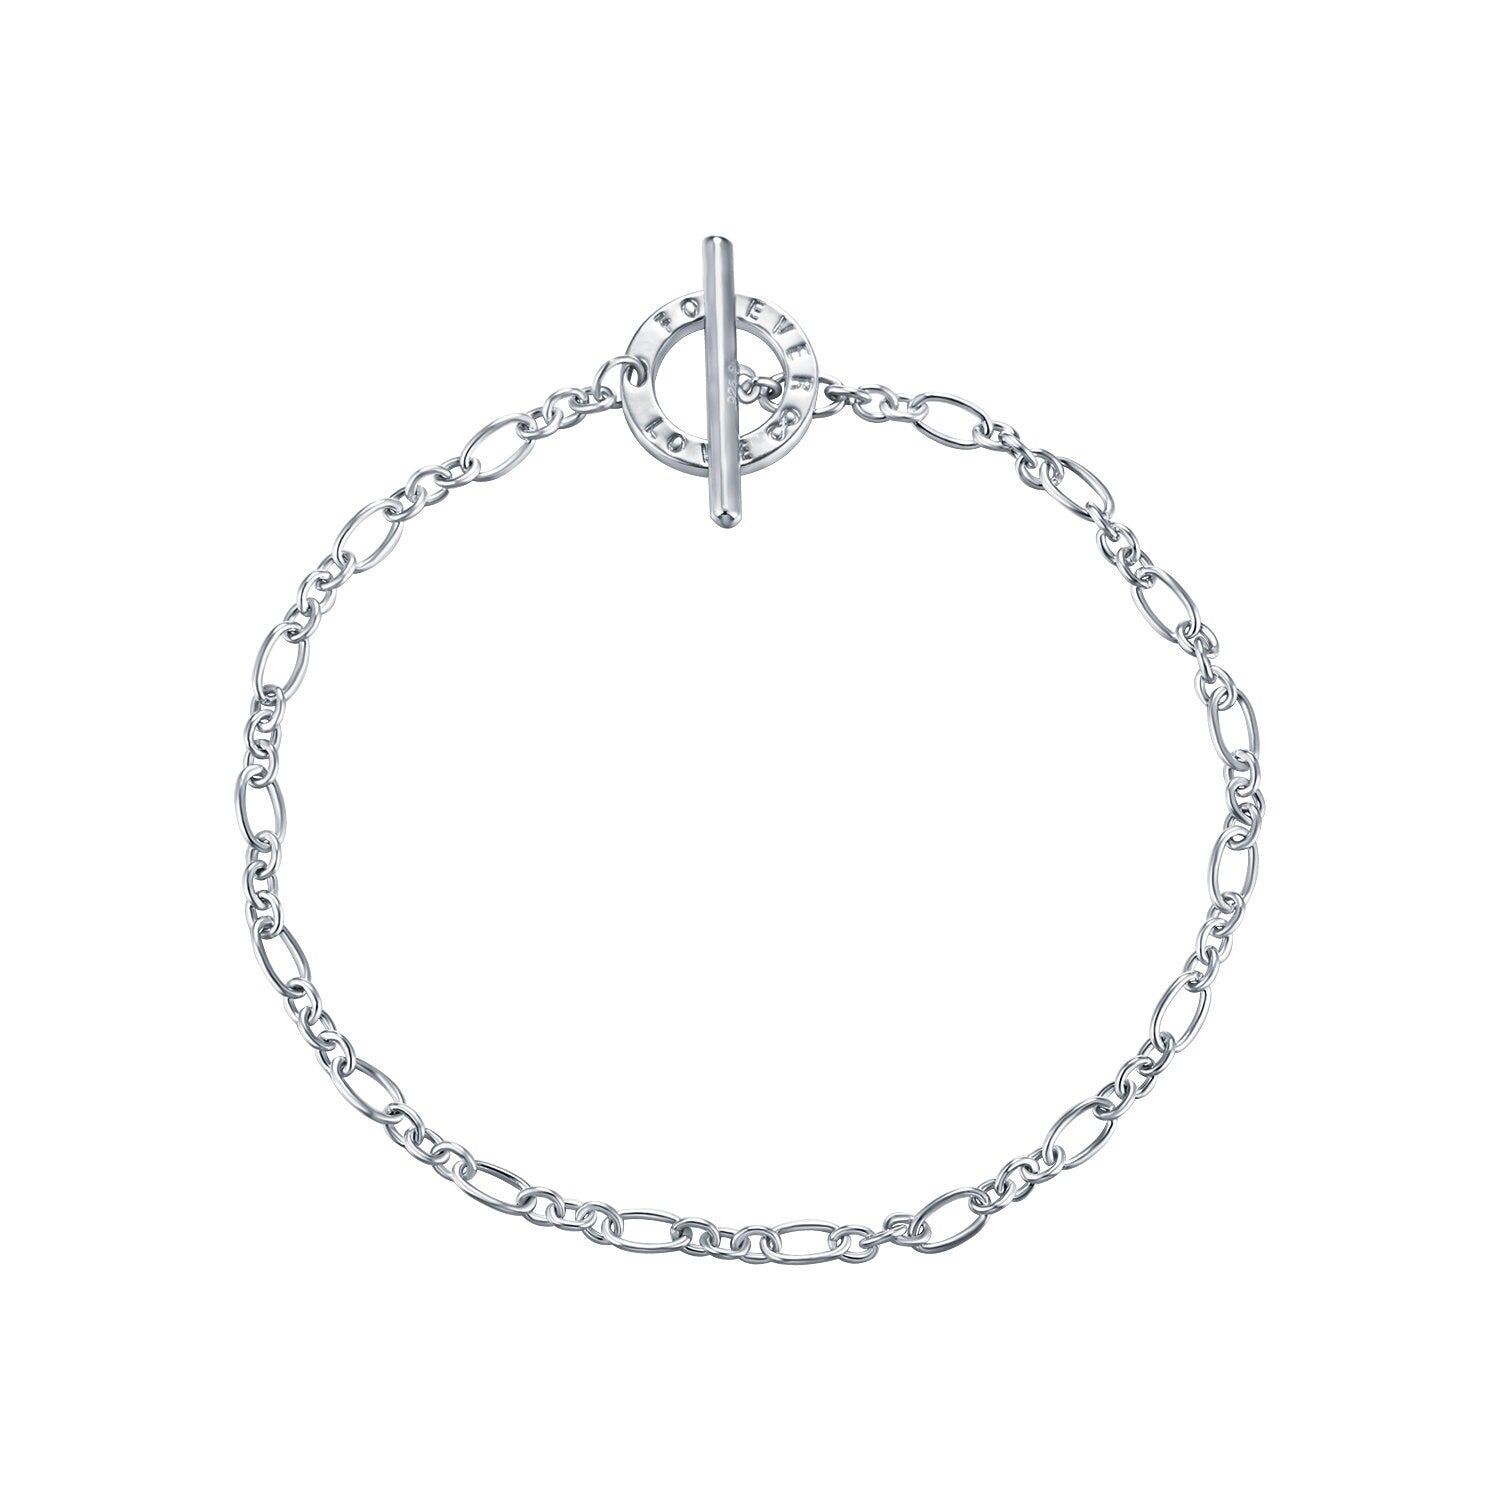 Billie - Simple Sterling Silver Charm Bracelet (Adjustable) for women